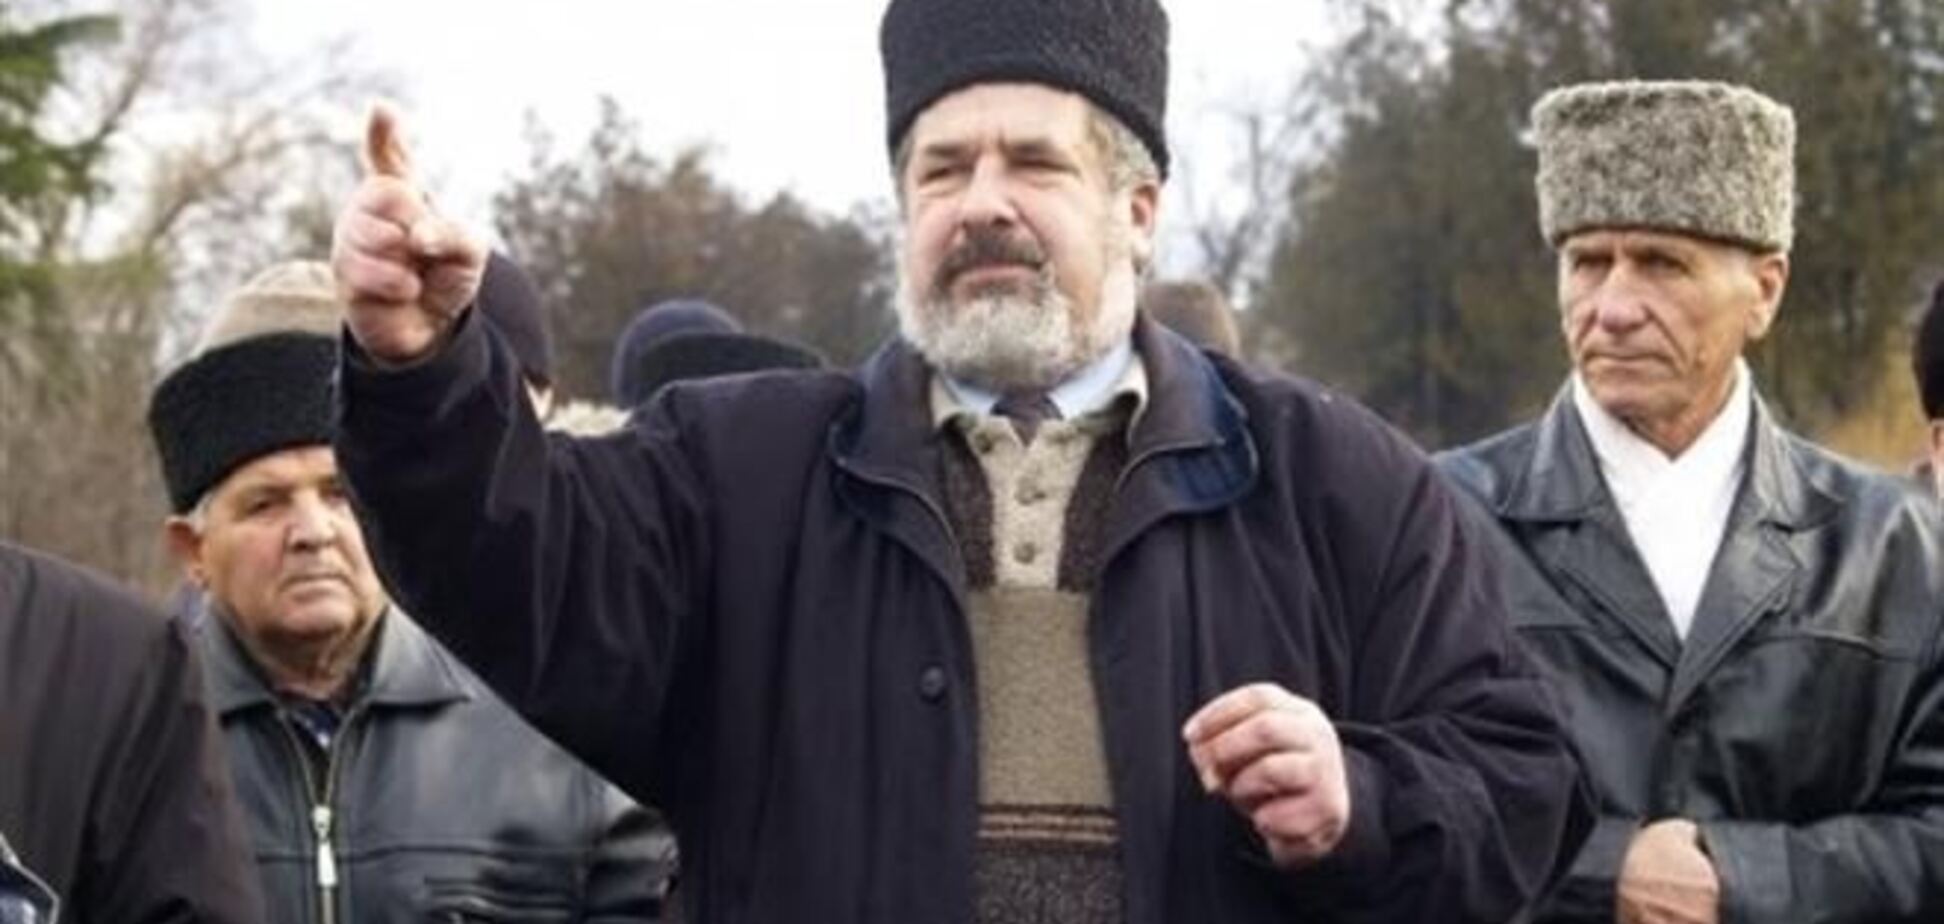 Крымские татары не признают референдум - Чубаров